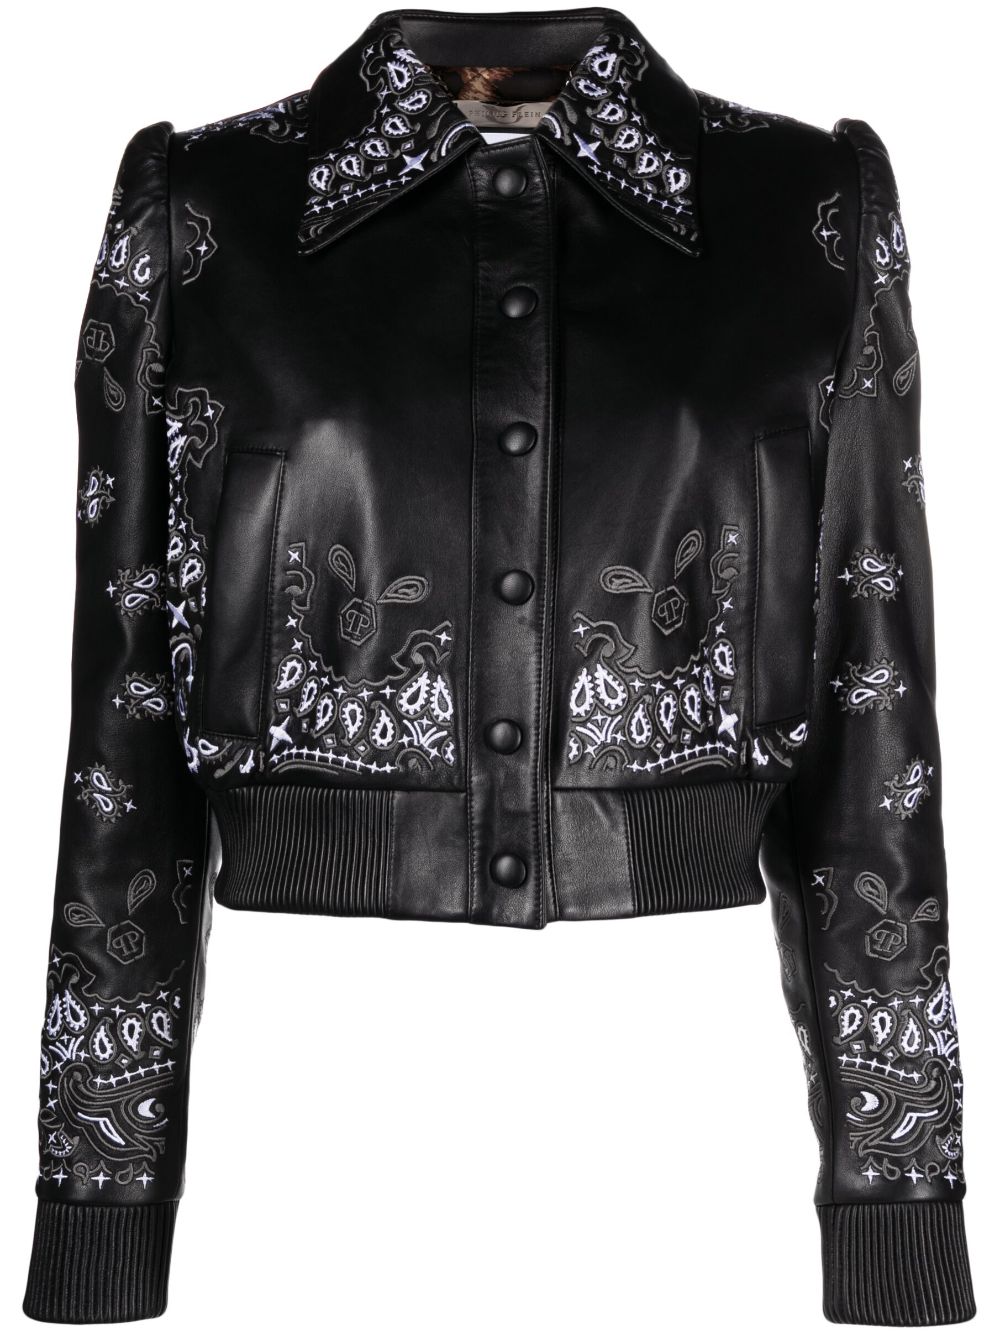 Philipp Plein embroidered leather jacket - Black